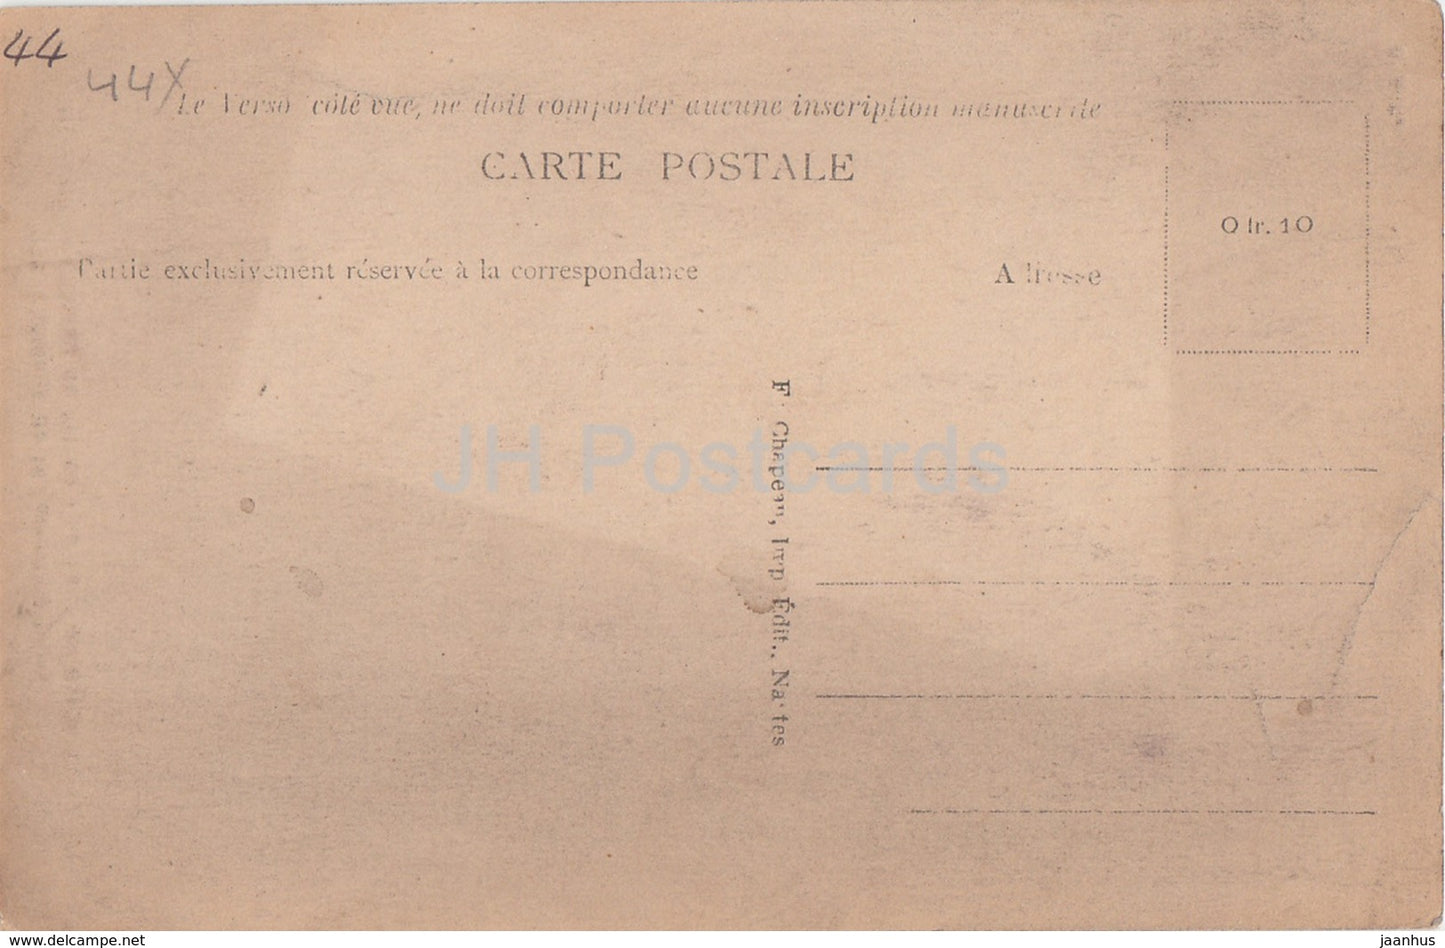 Chemere - Château de Prince - La Tour de Barbe Bleue - 233 - château - carte postale ancienne - France - inutilisé